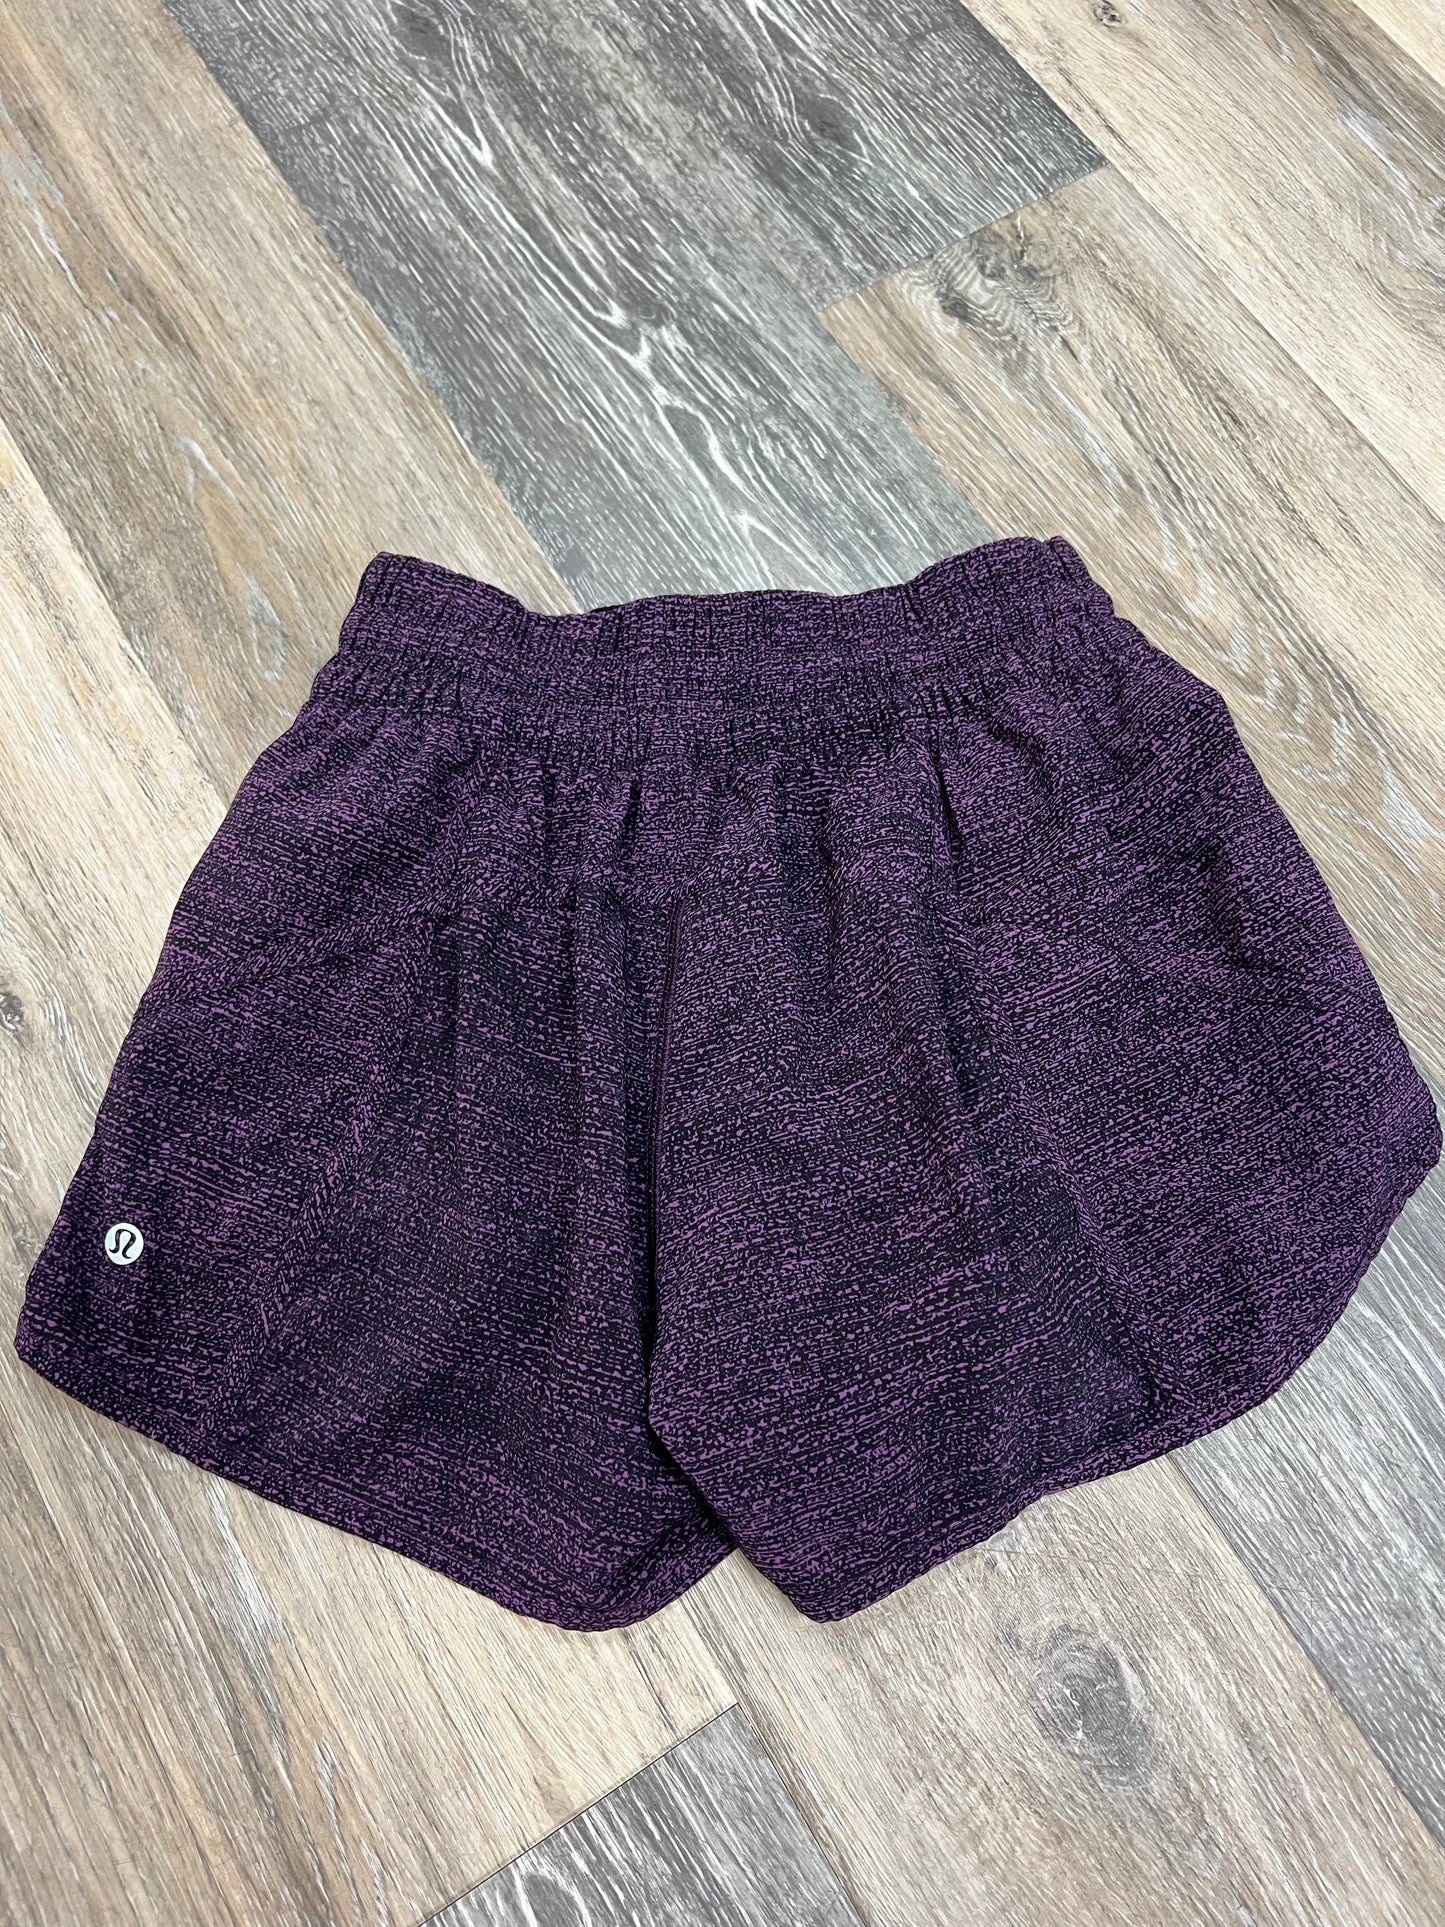 Purple Athletic Shorts Lululemon, Size 8